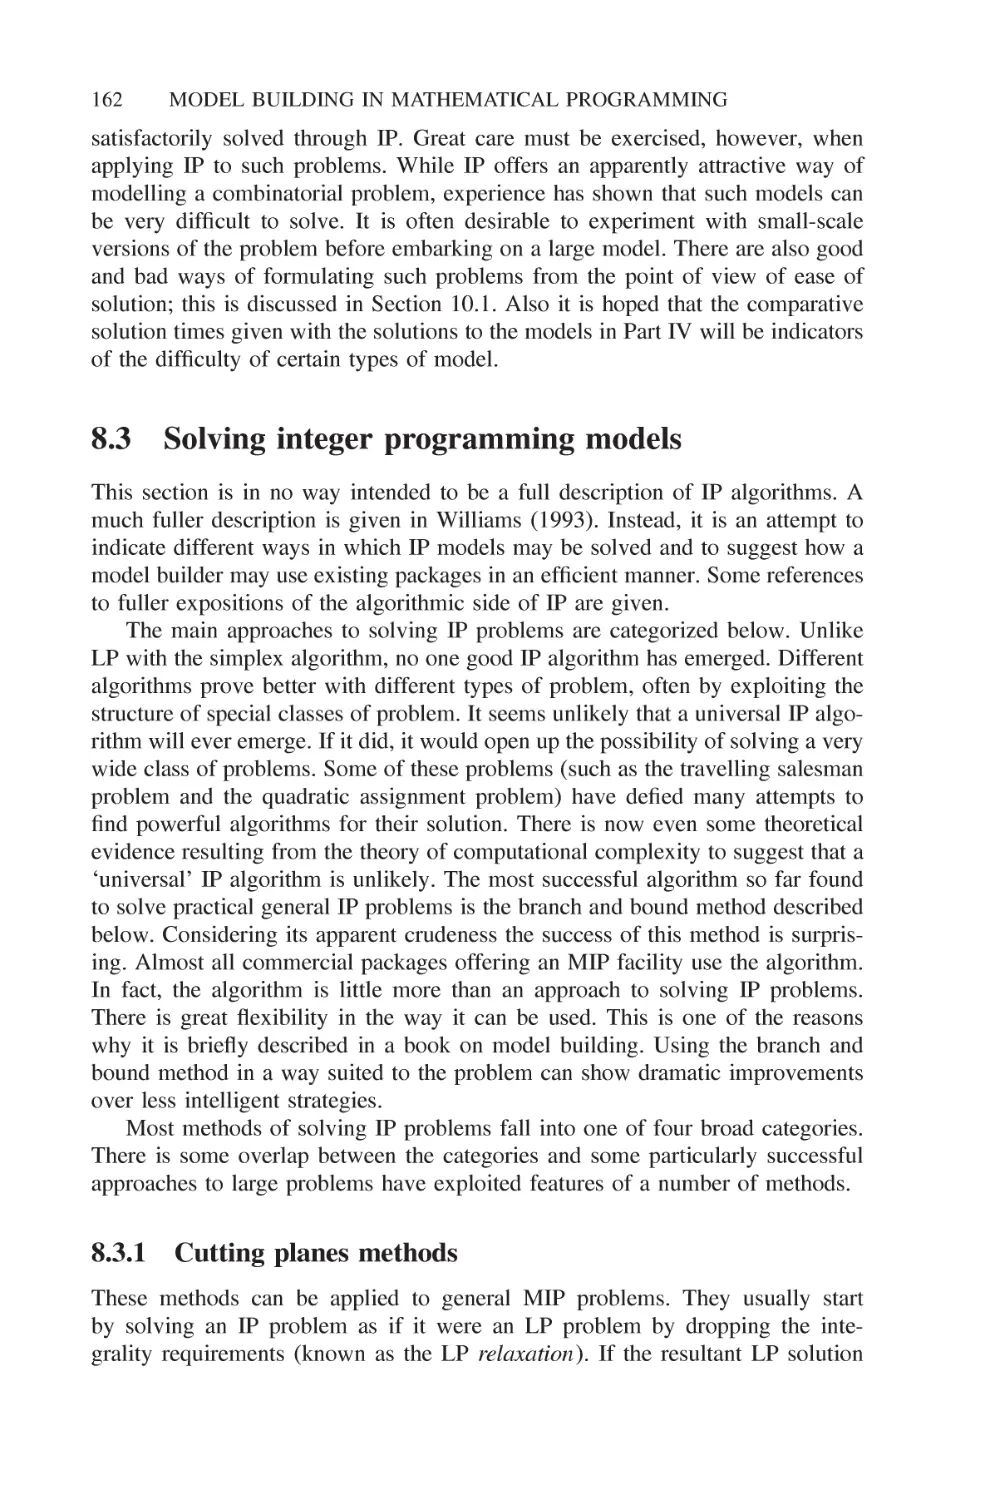 8.3 Solving integer programming models